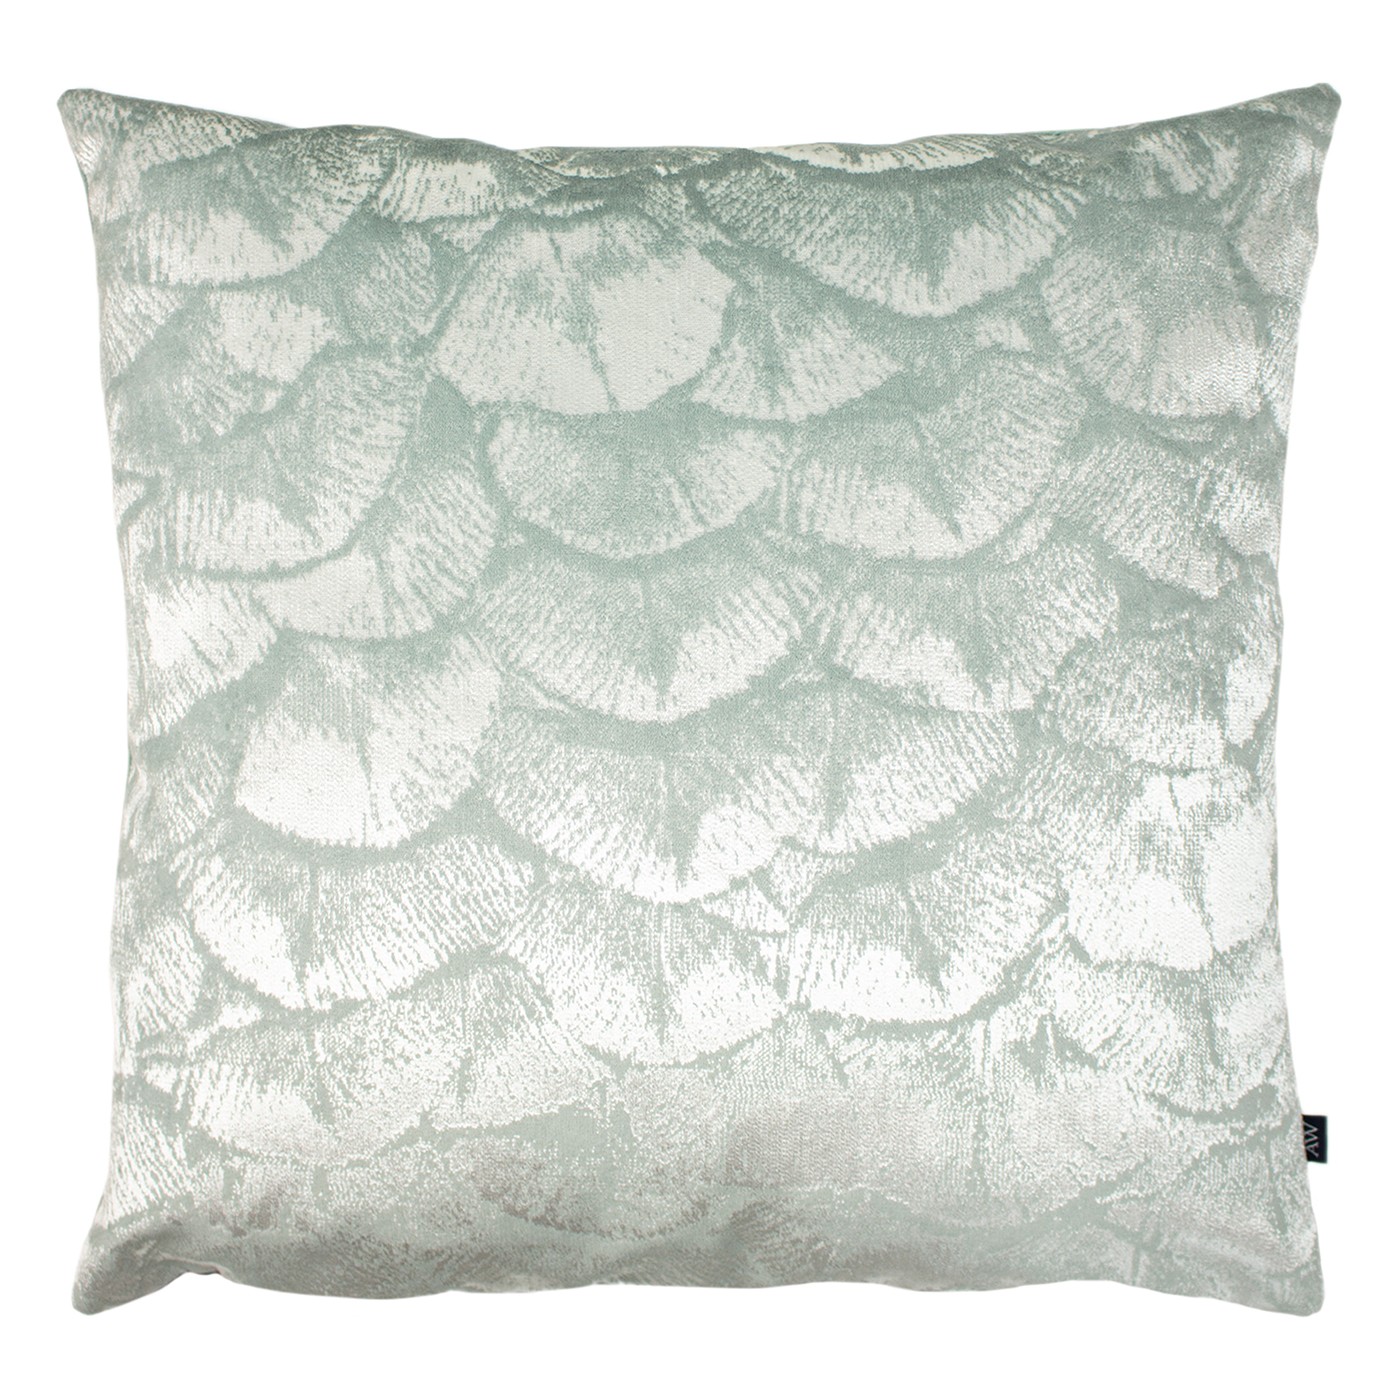 Victoria & Co. Jaden Sea Green Cushion 50x50